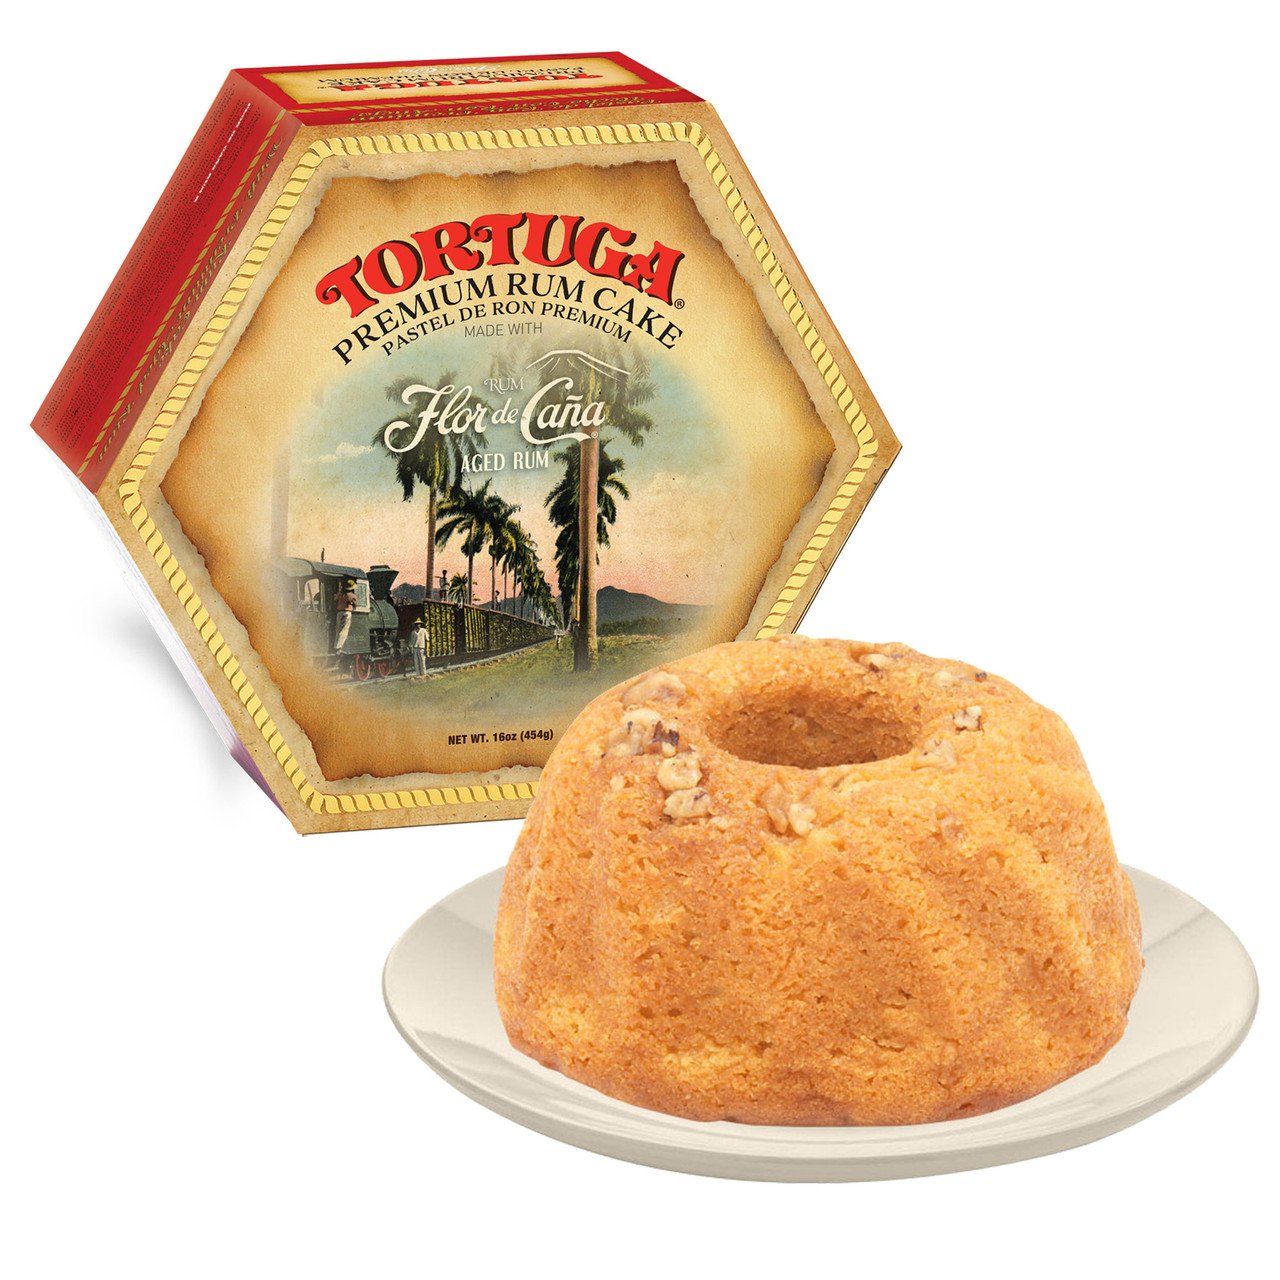 Image of Tortuga Premium Flor De Cana Rum Cake (16oz)